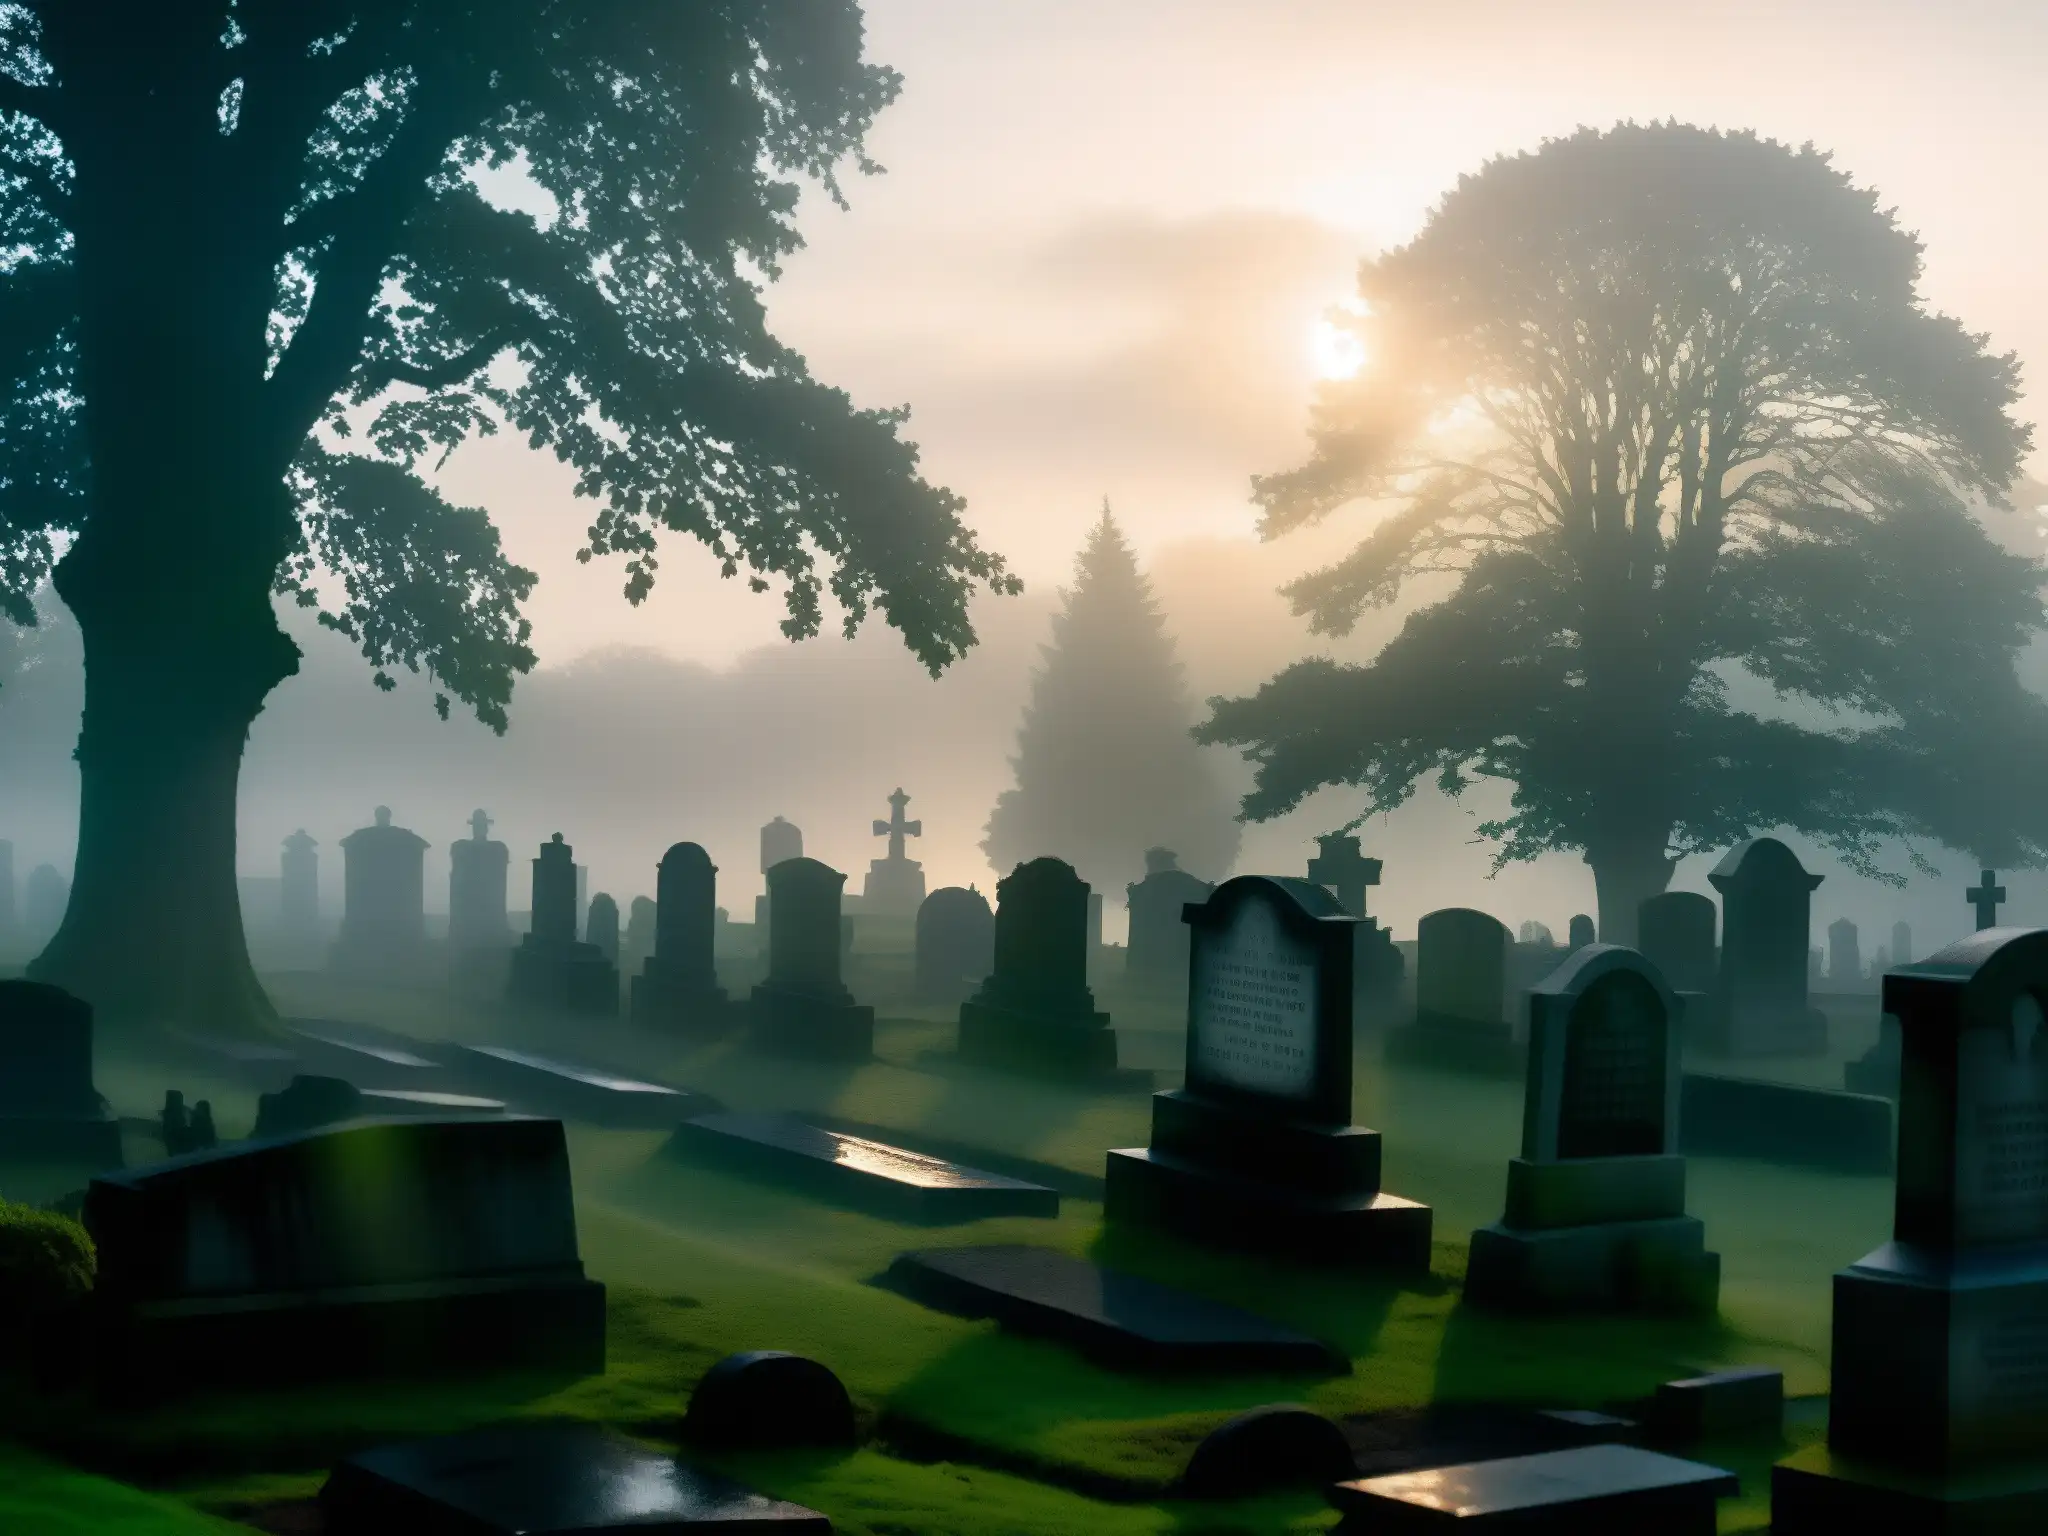 Misteriosa presencia del Más Allá en Cementerio Lothian al anochecer, con neblina y figuras sombrías entre las tumbas